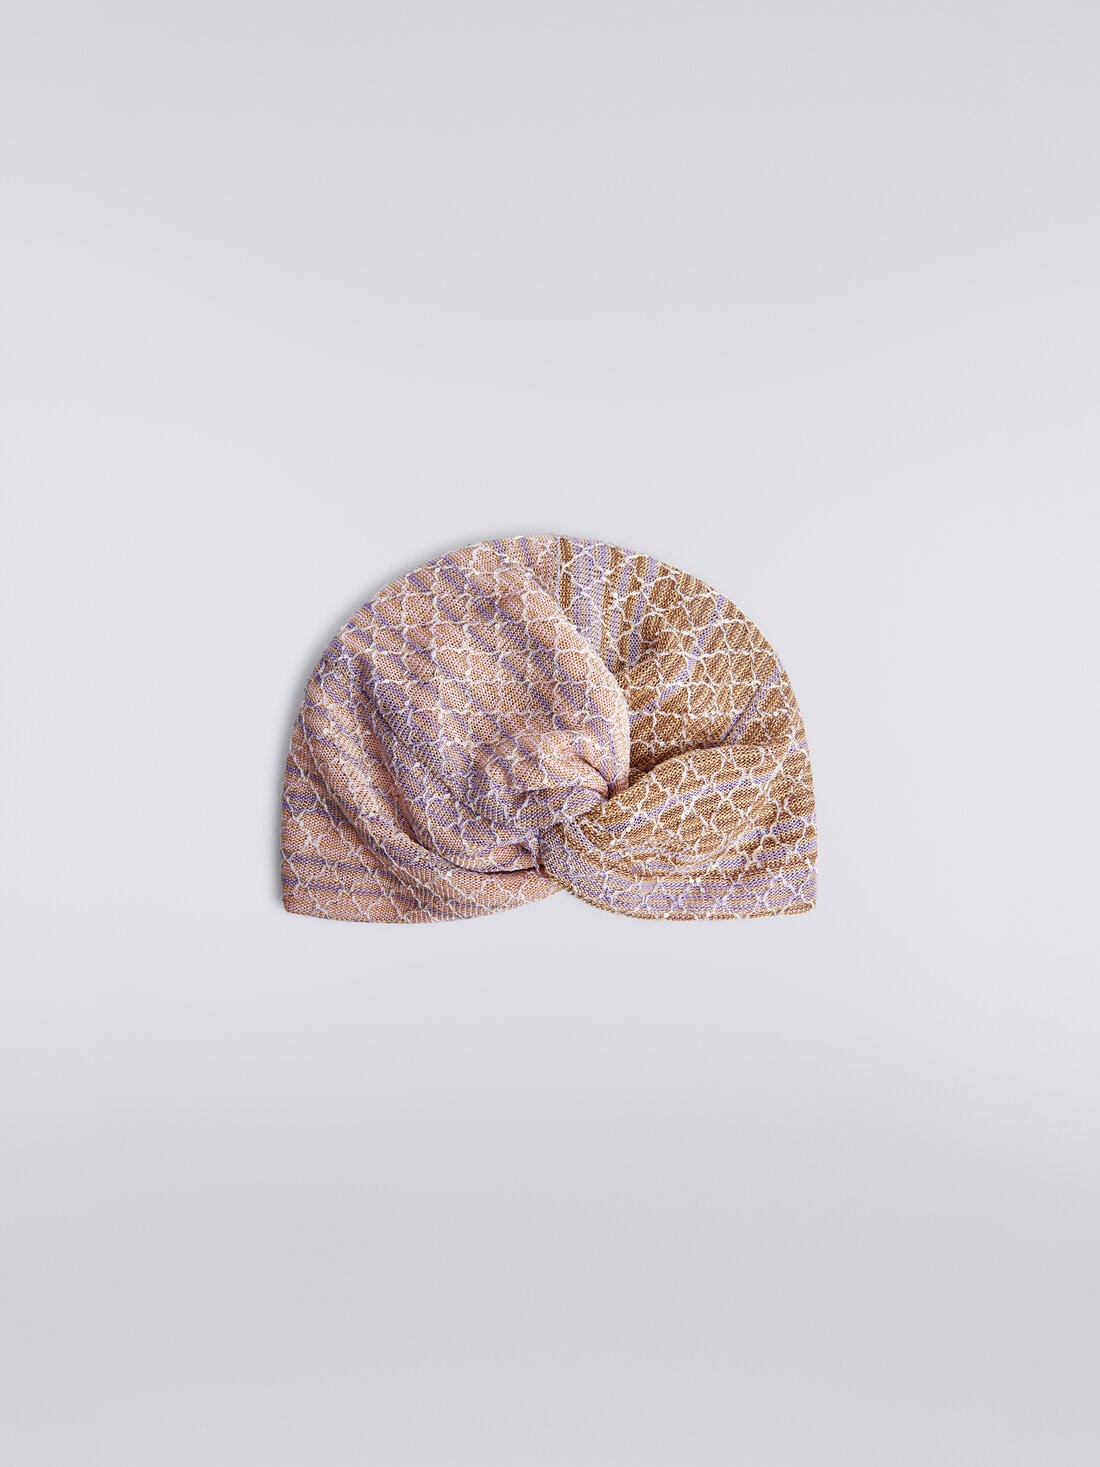 Turbante in maglia dégradé con paillettes, Multicolore  - 8053147029849 - 0